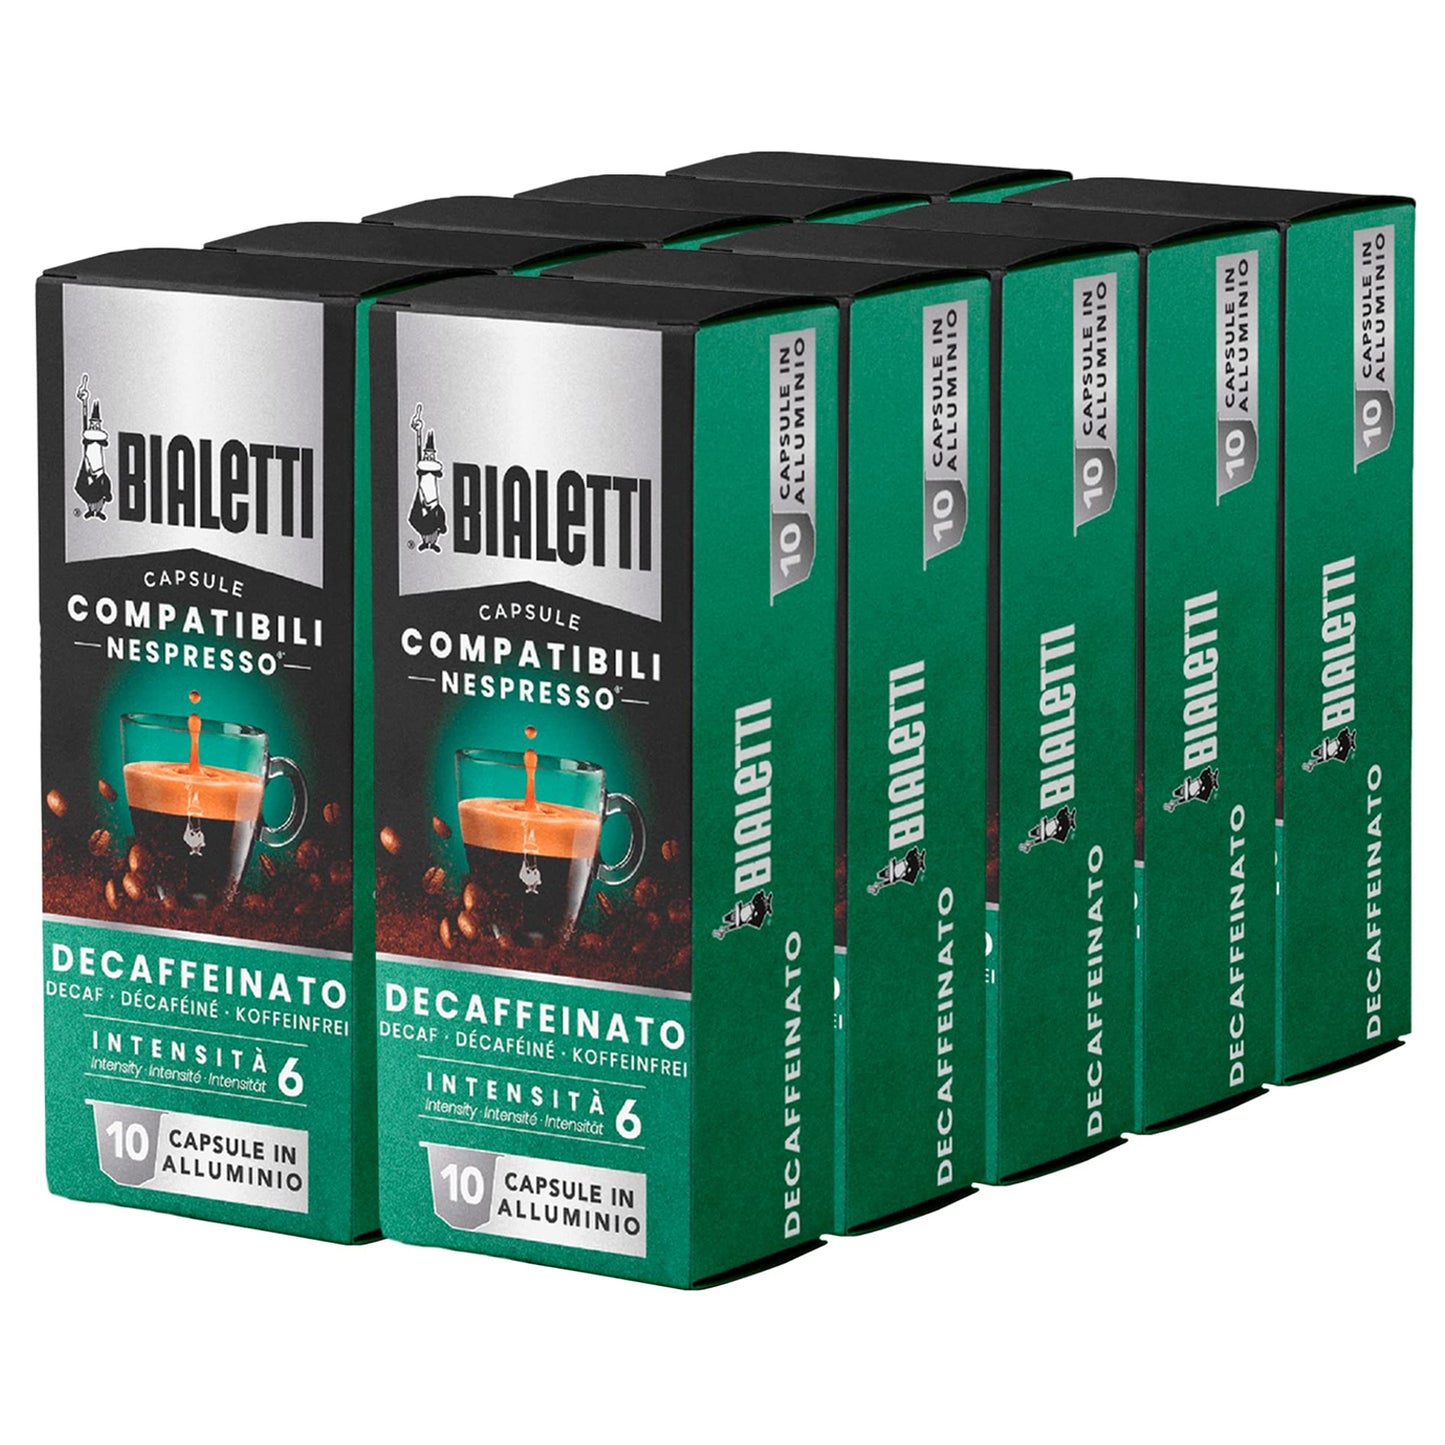 Bialetti Aluminum Nespresso Compatible Capsules - 100 count DECAFFEINATO blend - Espresso Coffee Pods compatible with Nespresso Machines